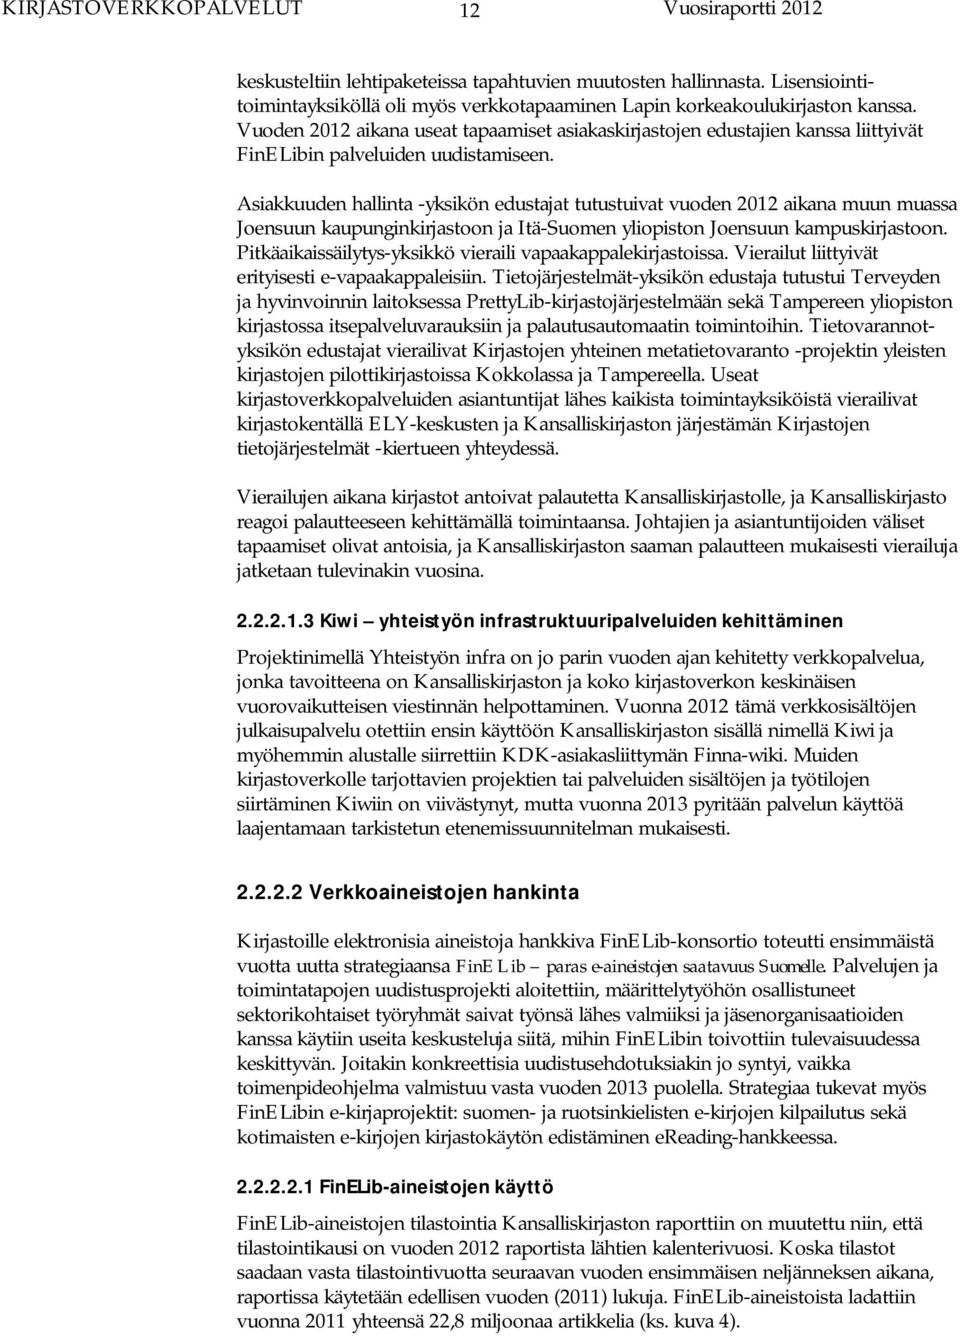 Asiakkuuden hallinta -yksikön edustajat tutustuivat vuoden 2012 aikana muun muassa Joensuun kaupunginkirjastoon ja Itä-Suomen yliopiston Joensuun kampuskirjastoon.